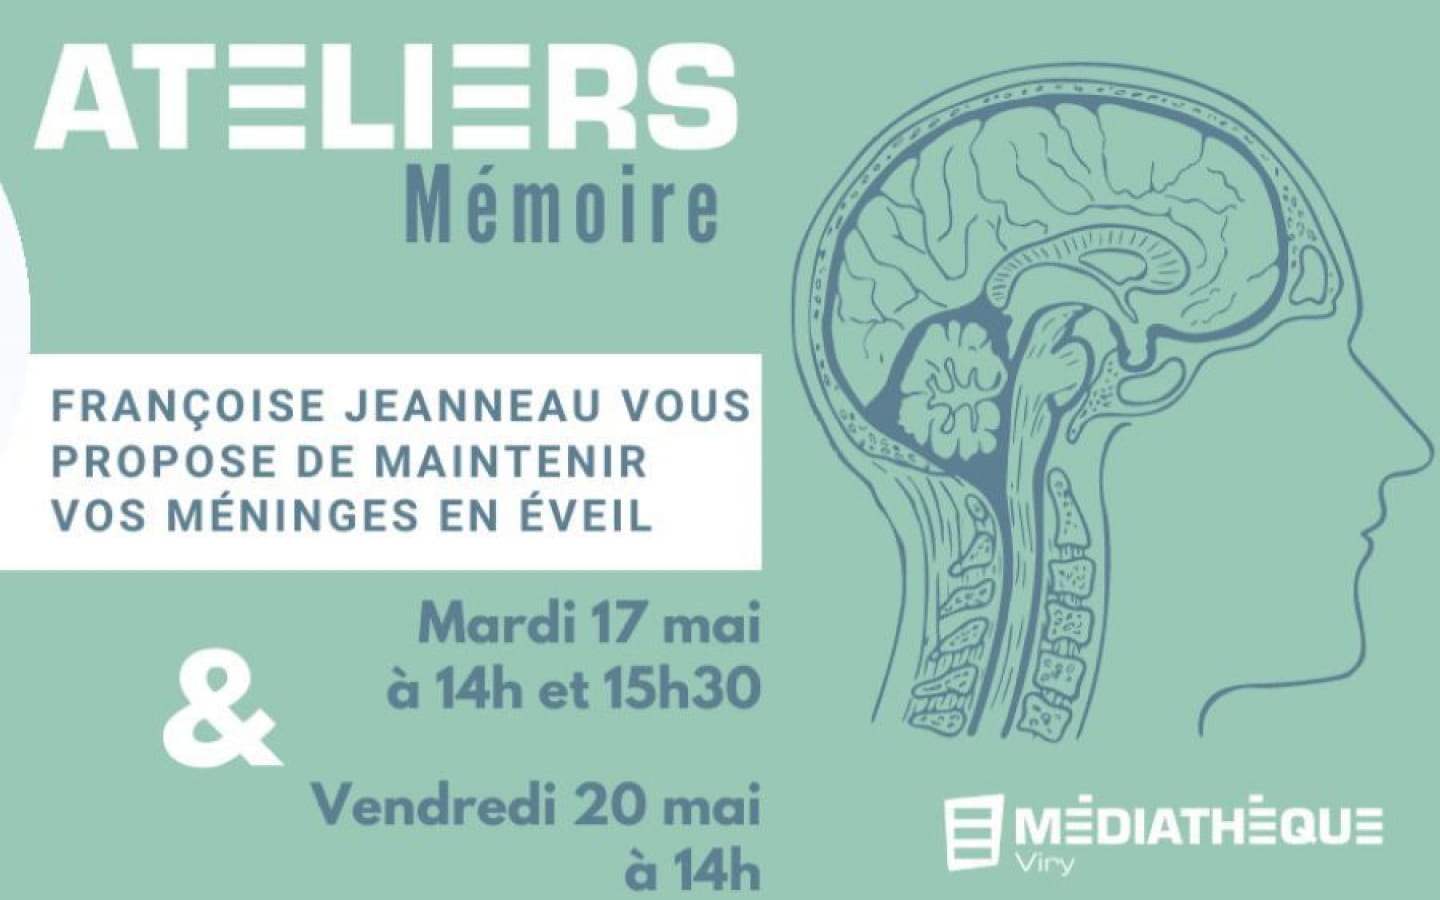 Médiathèque Haut-Jura Saint-Claude : Viry - Ateliers mémoire